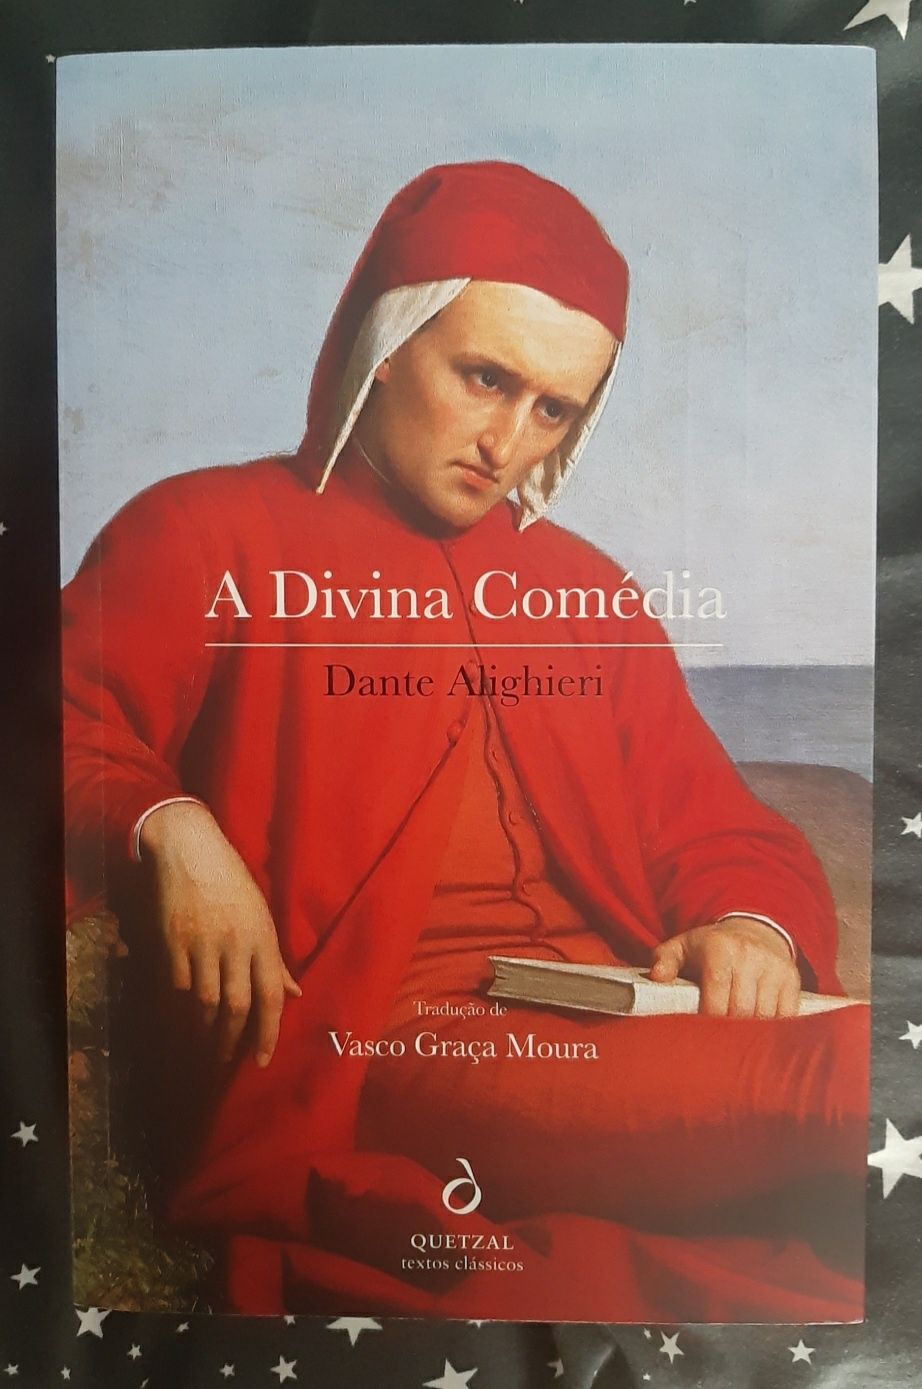 A divina comédia - Dante Alighieri (c/portes)